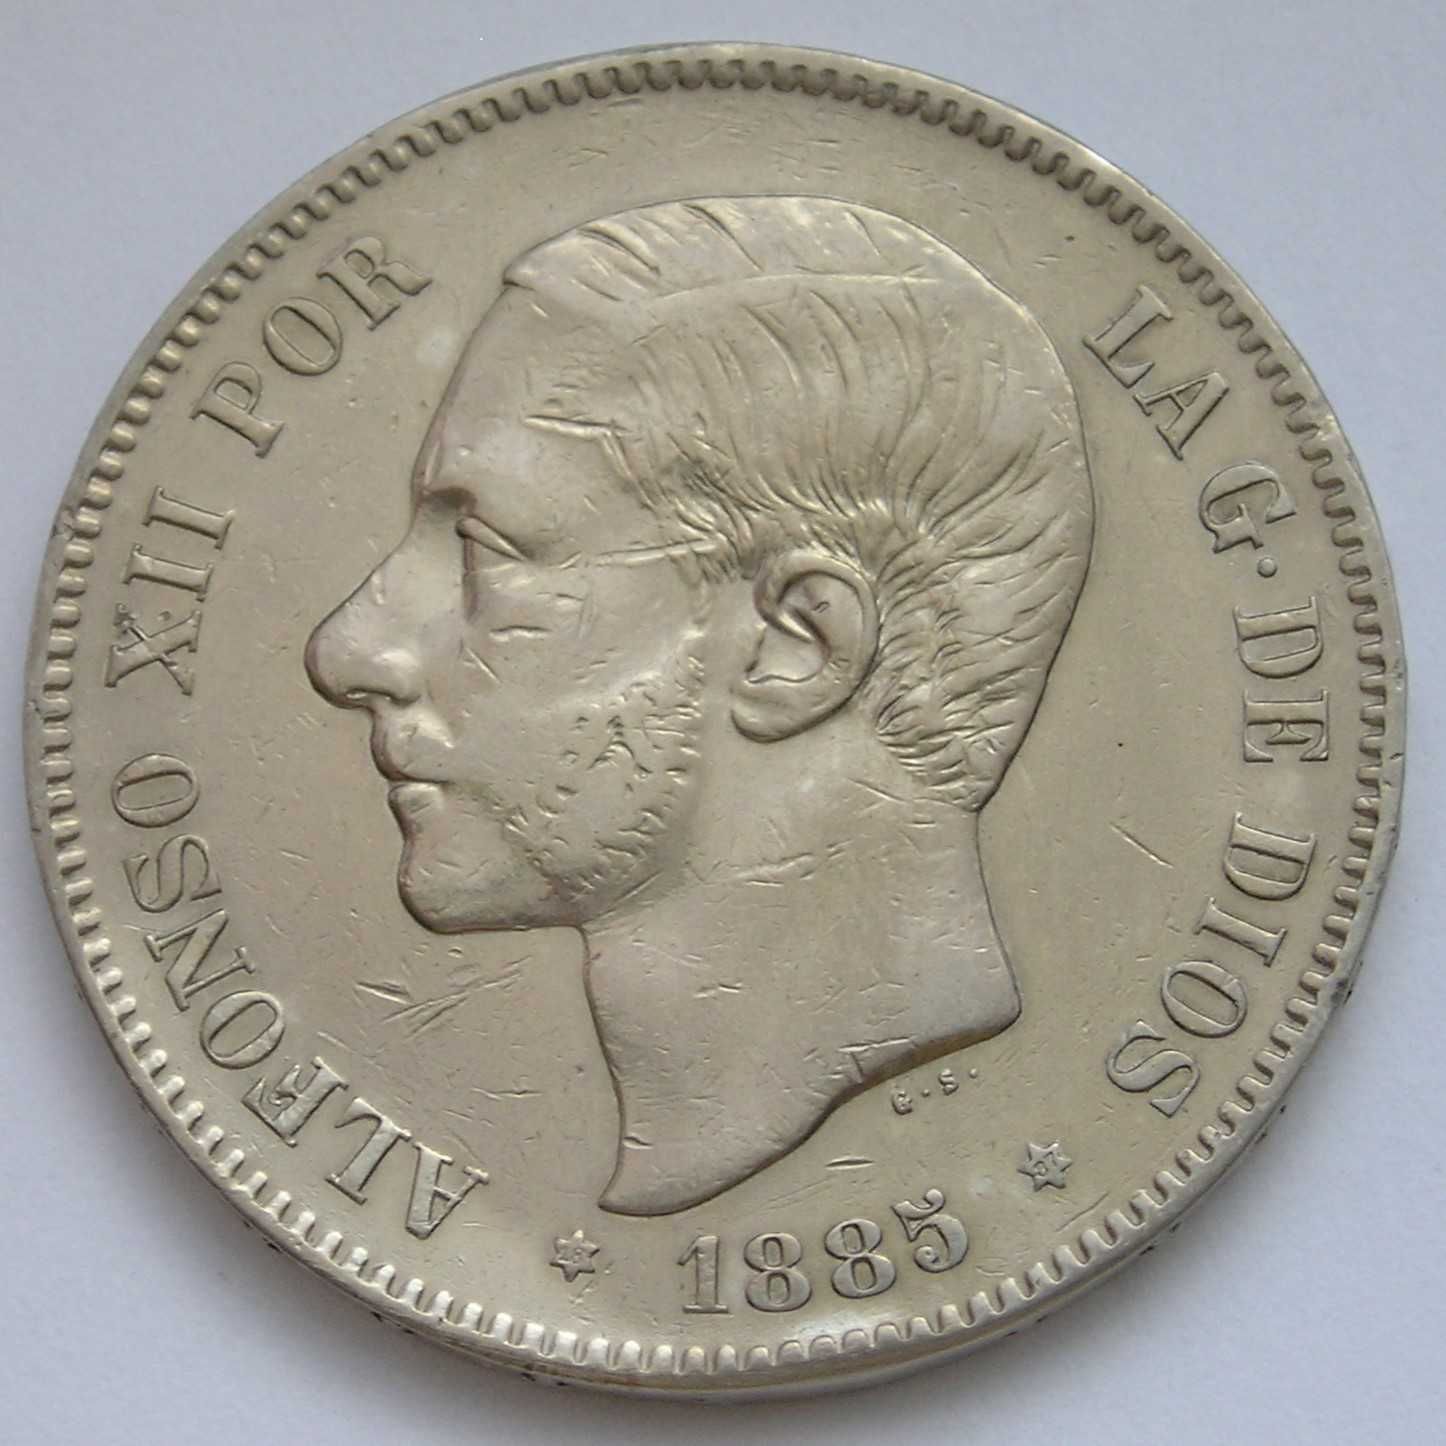 Hiszpania 5 peset 1885 - król Alfons XII - srebro